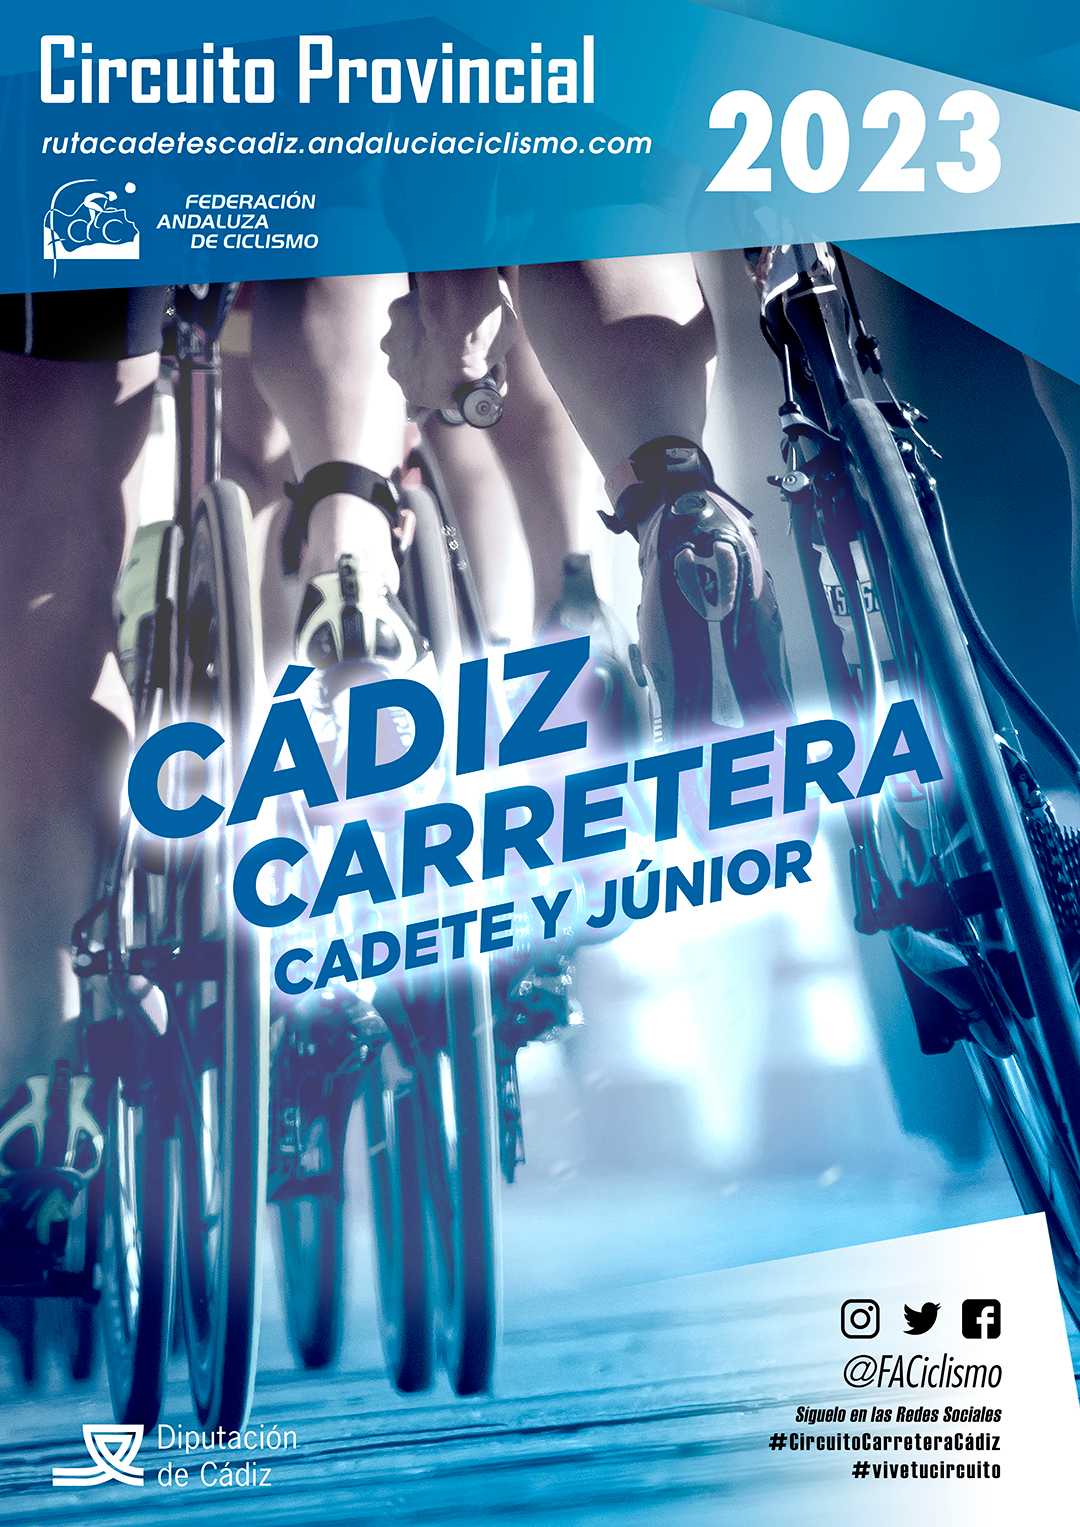 Fechas del Circuito Provincial de Cádiz Carretera Cadete/Júnior 2023